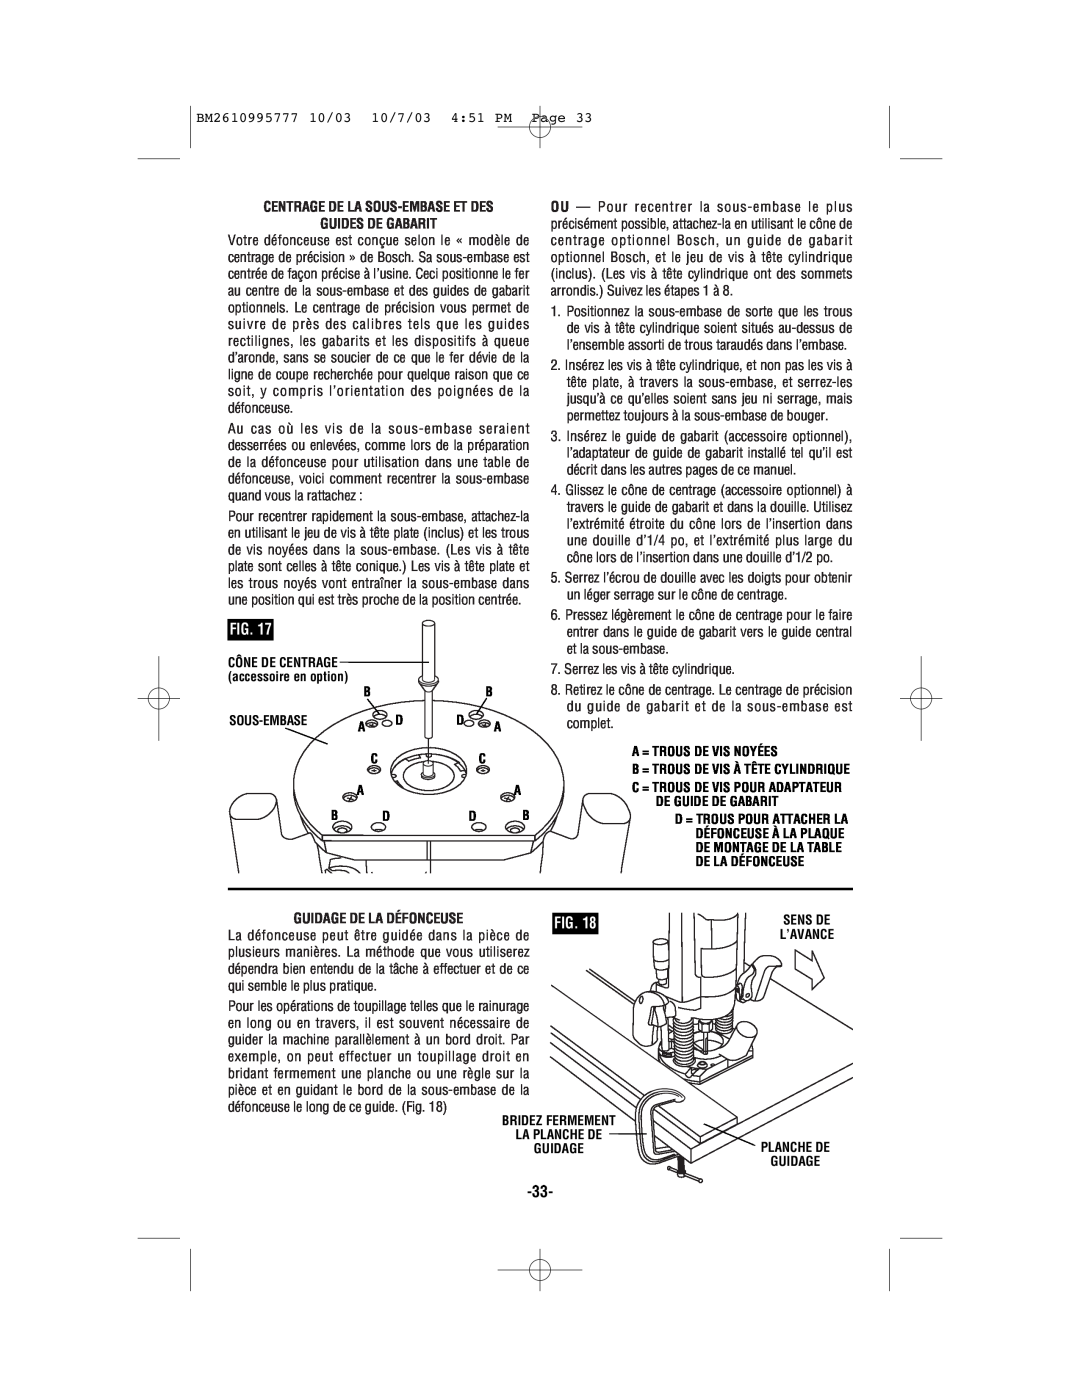 Bosch Power Tools 1619EVS manual Centrage De La Sous-Embase Et Des Guides De Gabarit, Guidage De La Défonceuse 